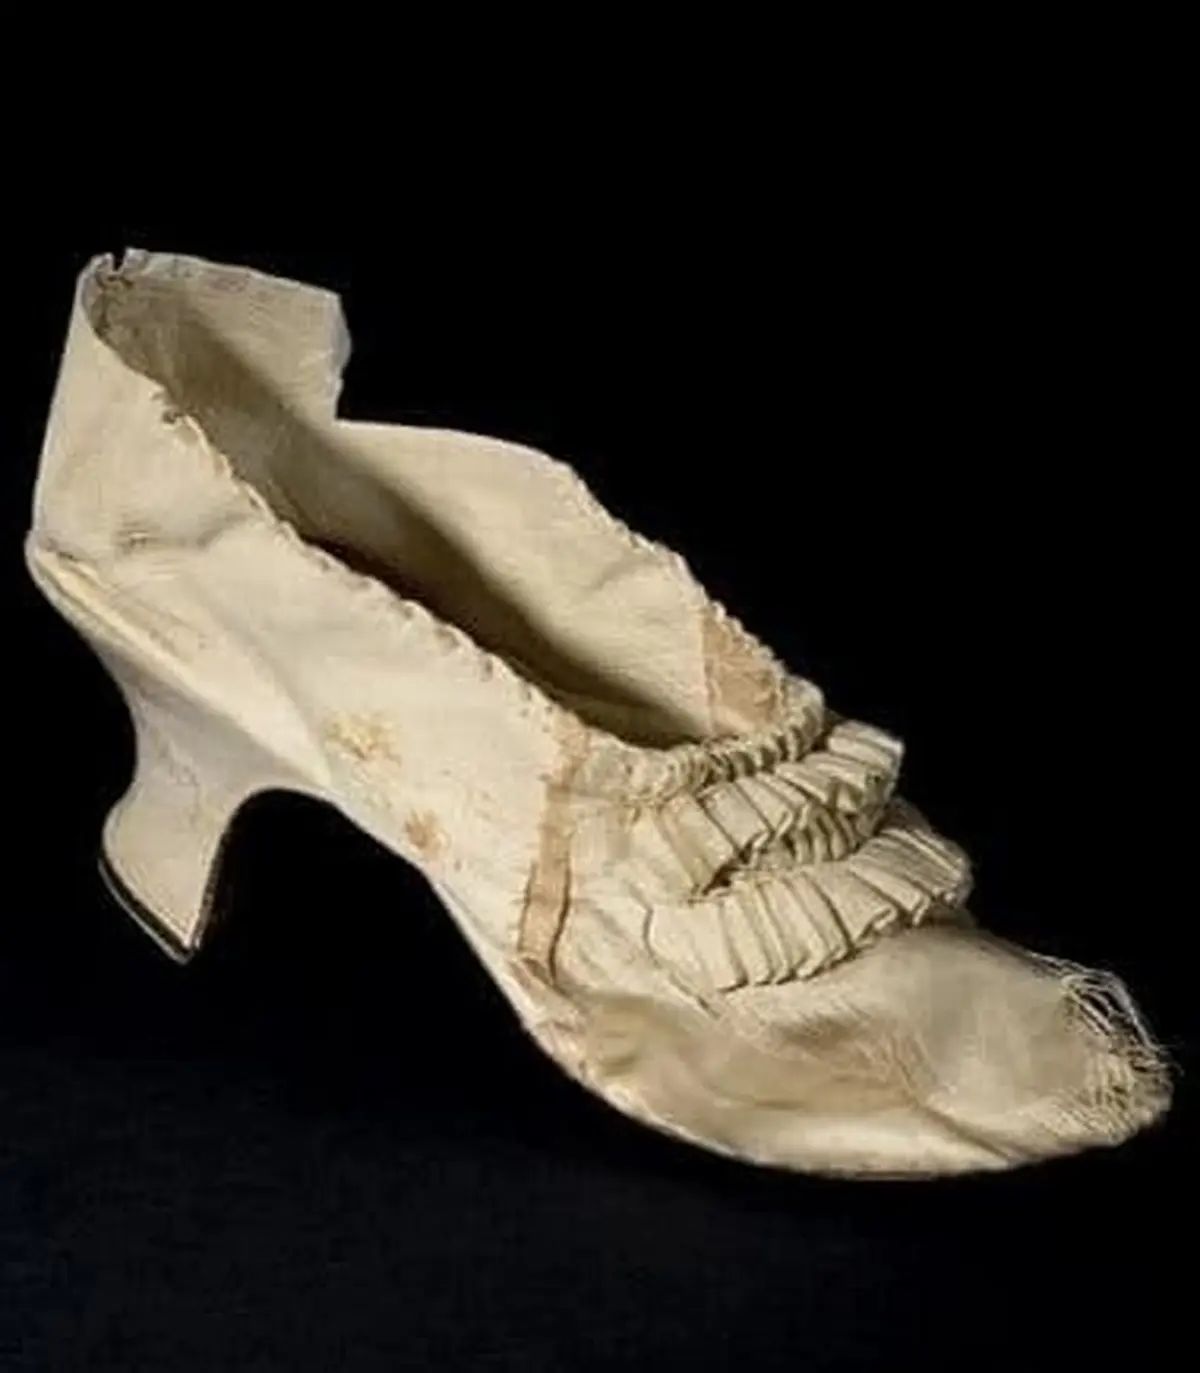  لنگه کفش ملکه پیشین فرانسه در حراجی به قیمت ۴۴ هزار یورو خریداری شد